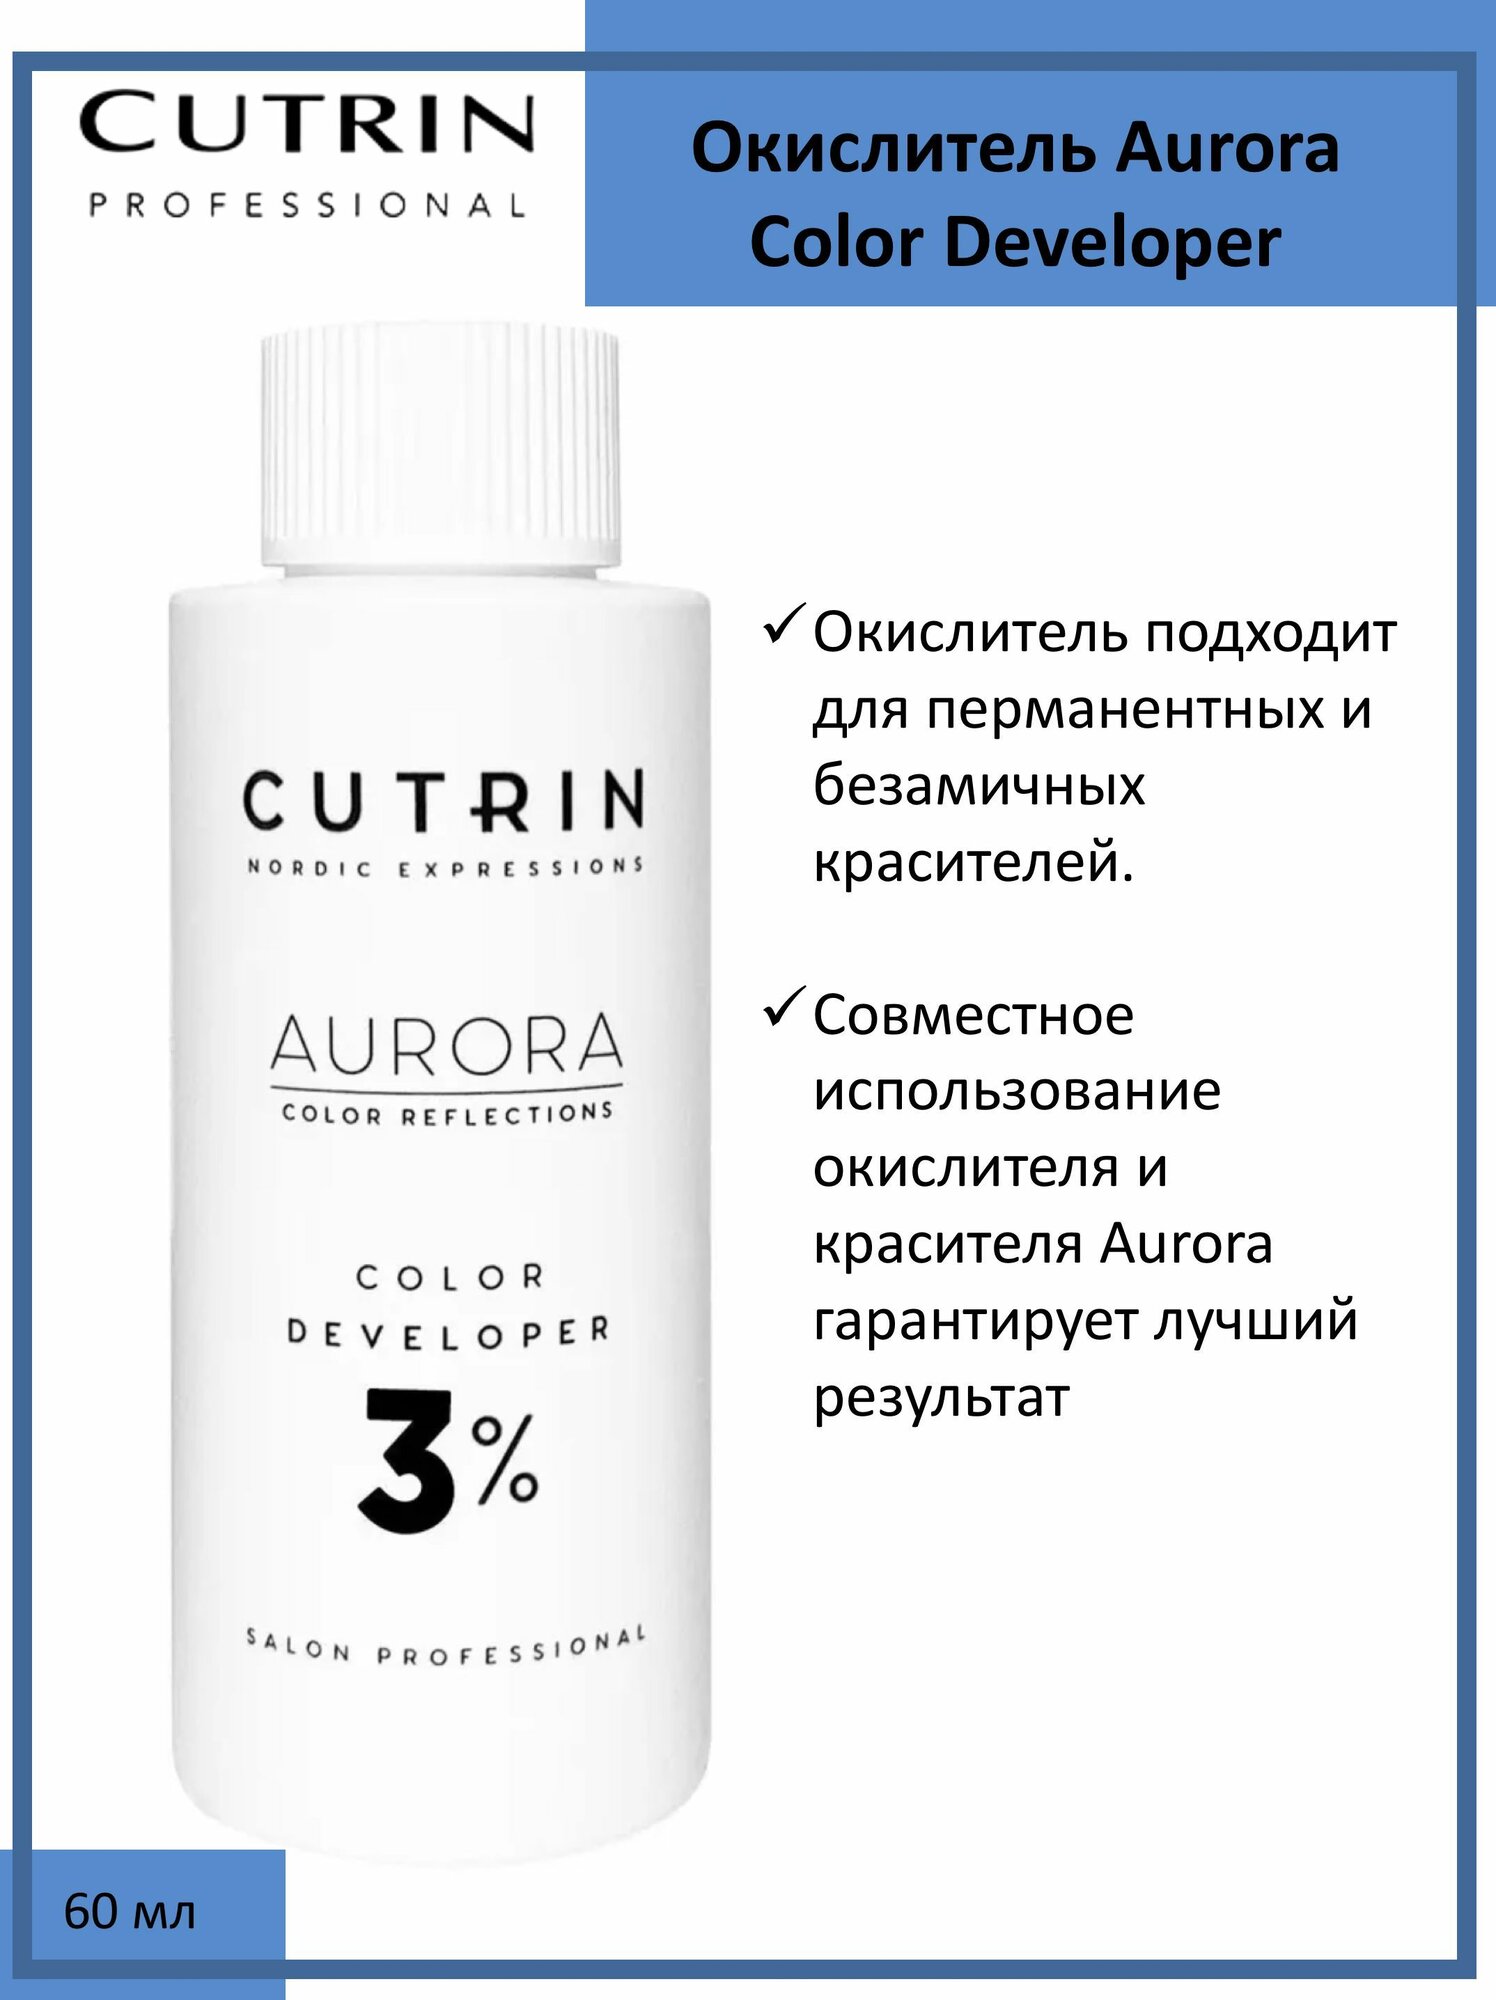 Cutrin Aurora Окислитель (эмульсия, оксигент, оксид) для красителя 3%, 60мл